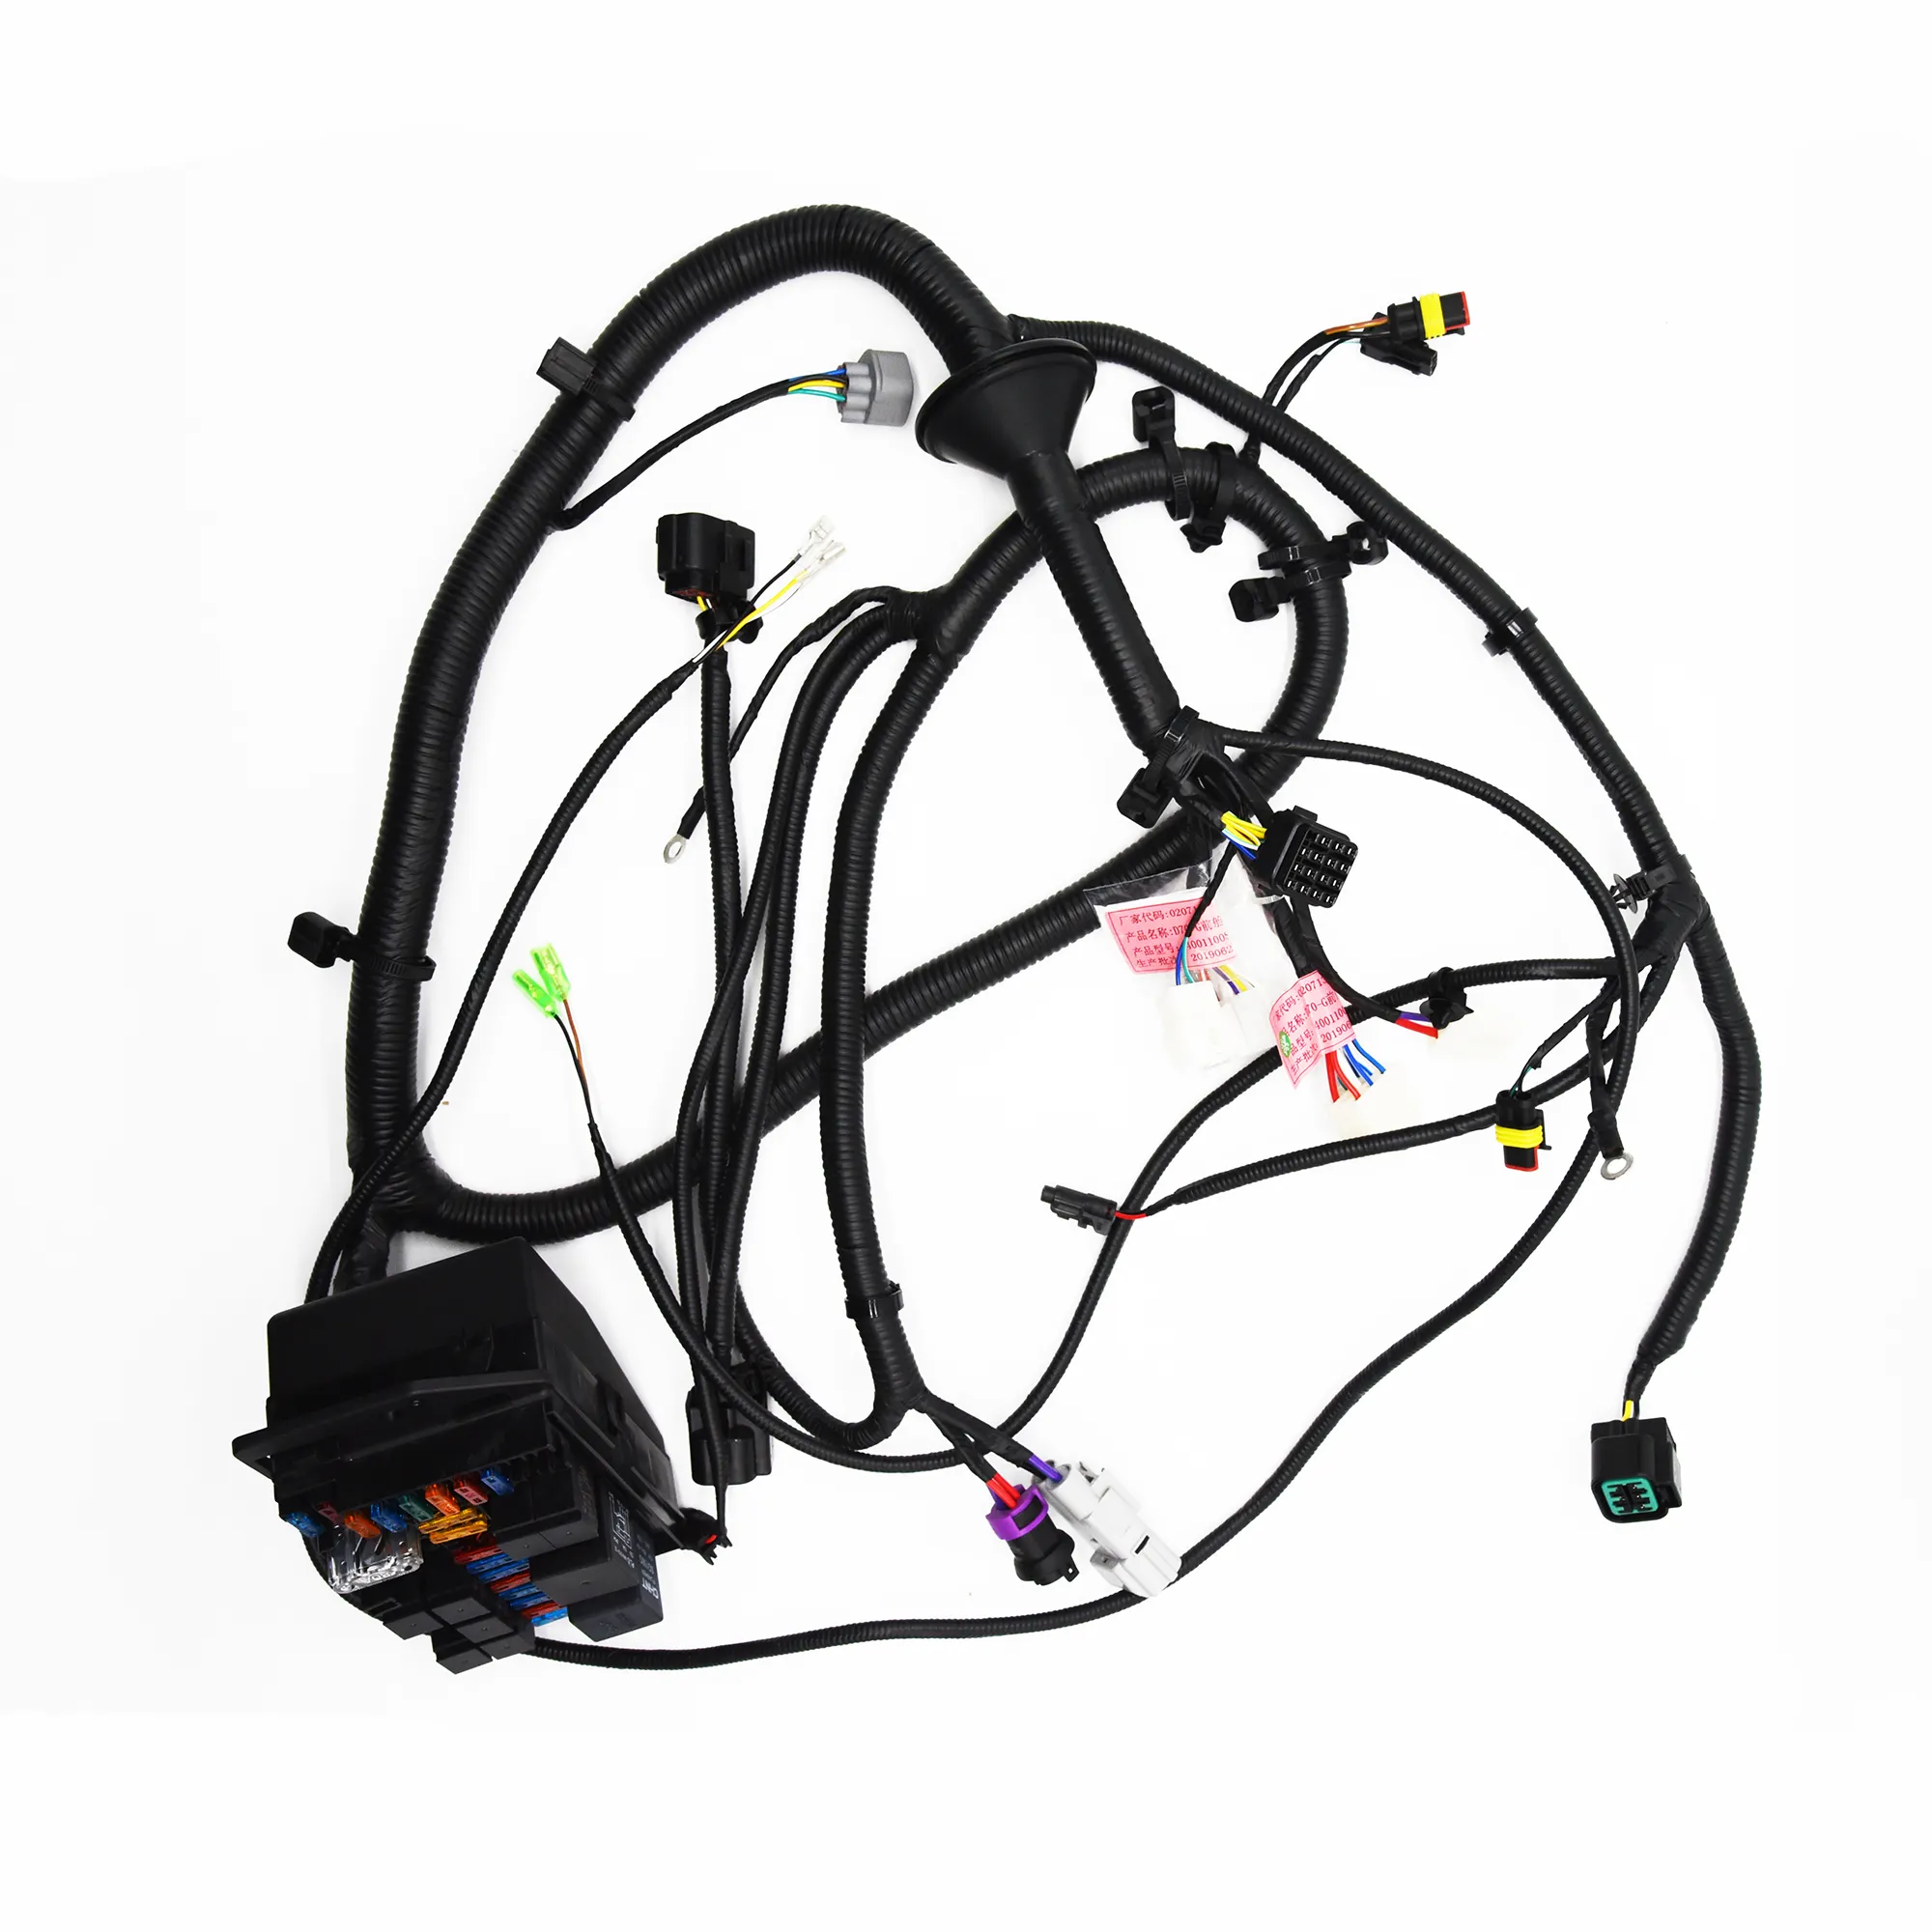 Harnes kabel kustom pabrik harnes kabel mobil cocok untuk Honda/Toyota/Ford/Kia/Volkswagen jalur kabel dimodifikasi